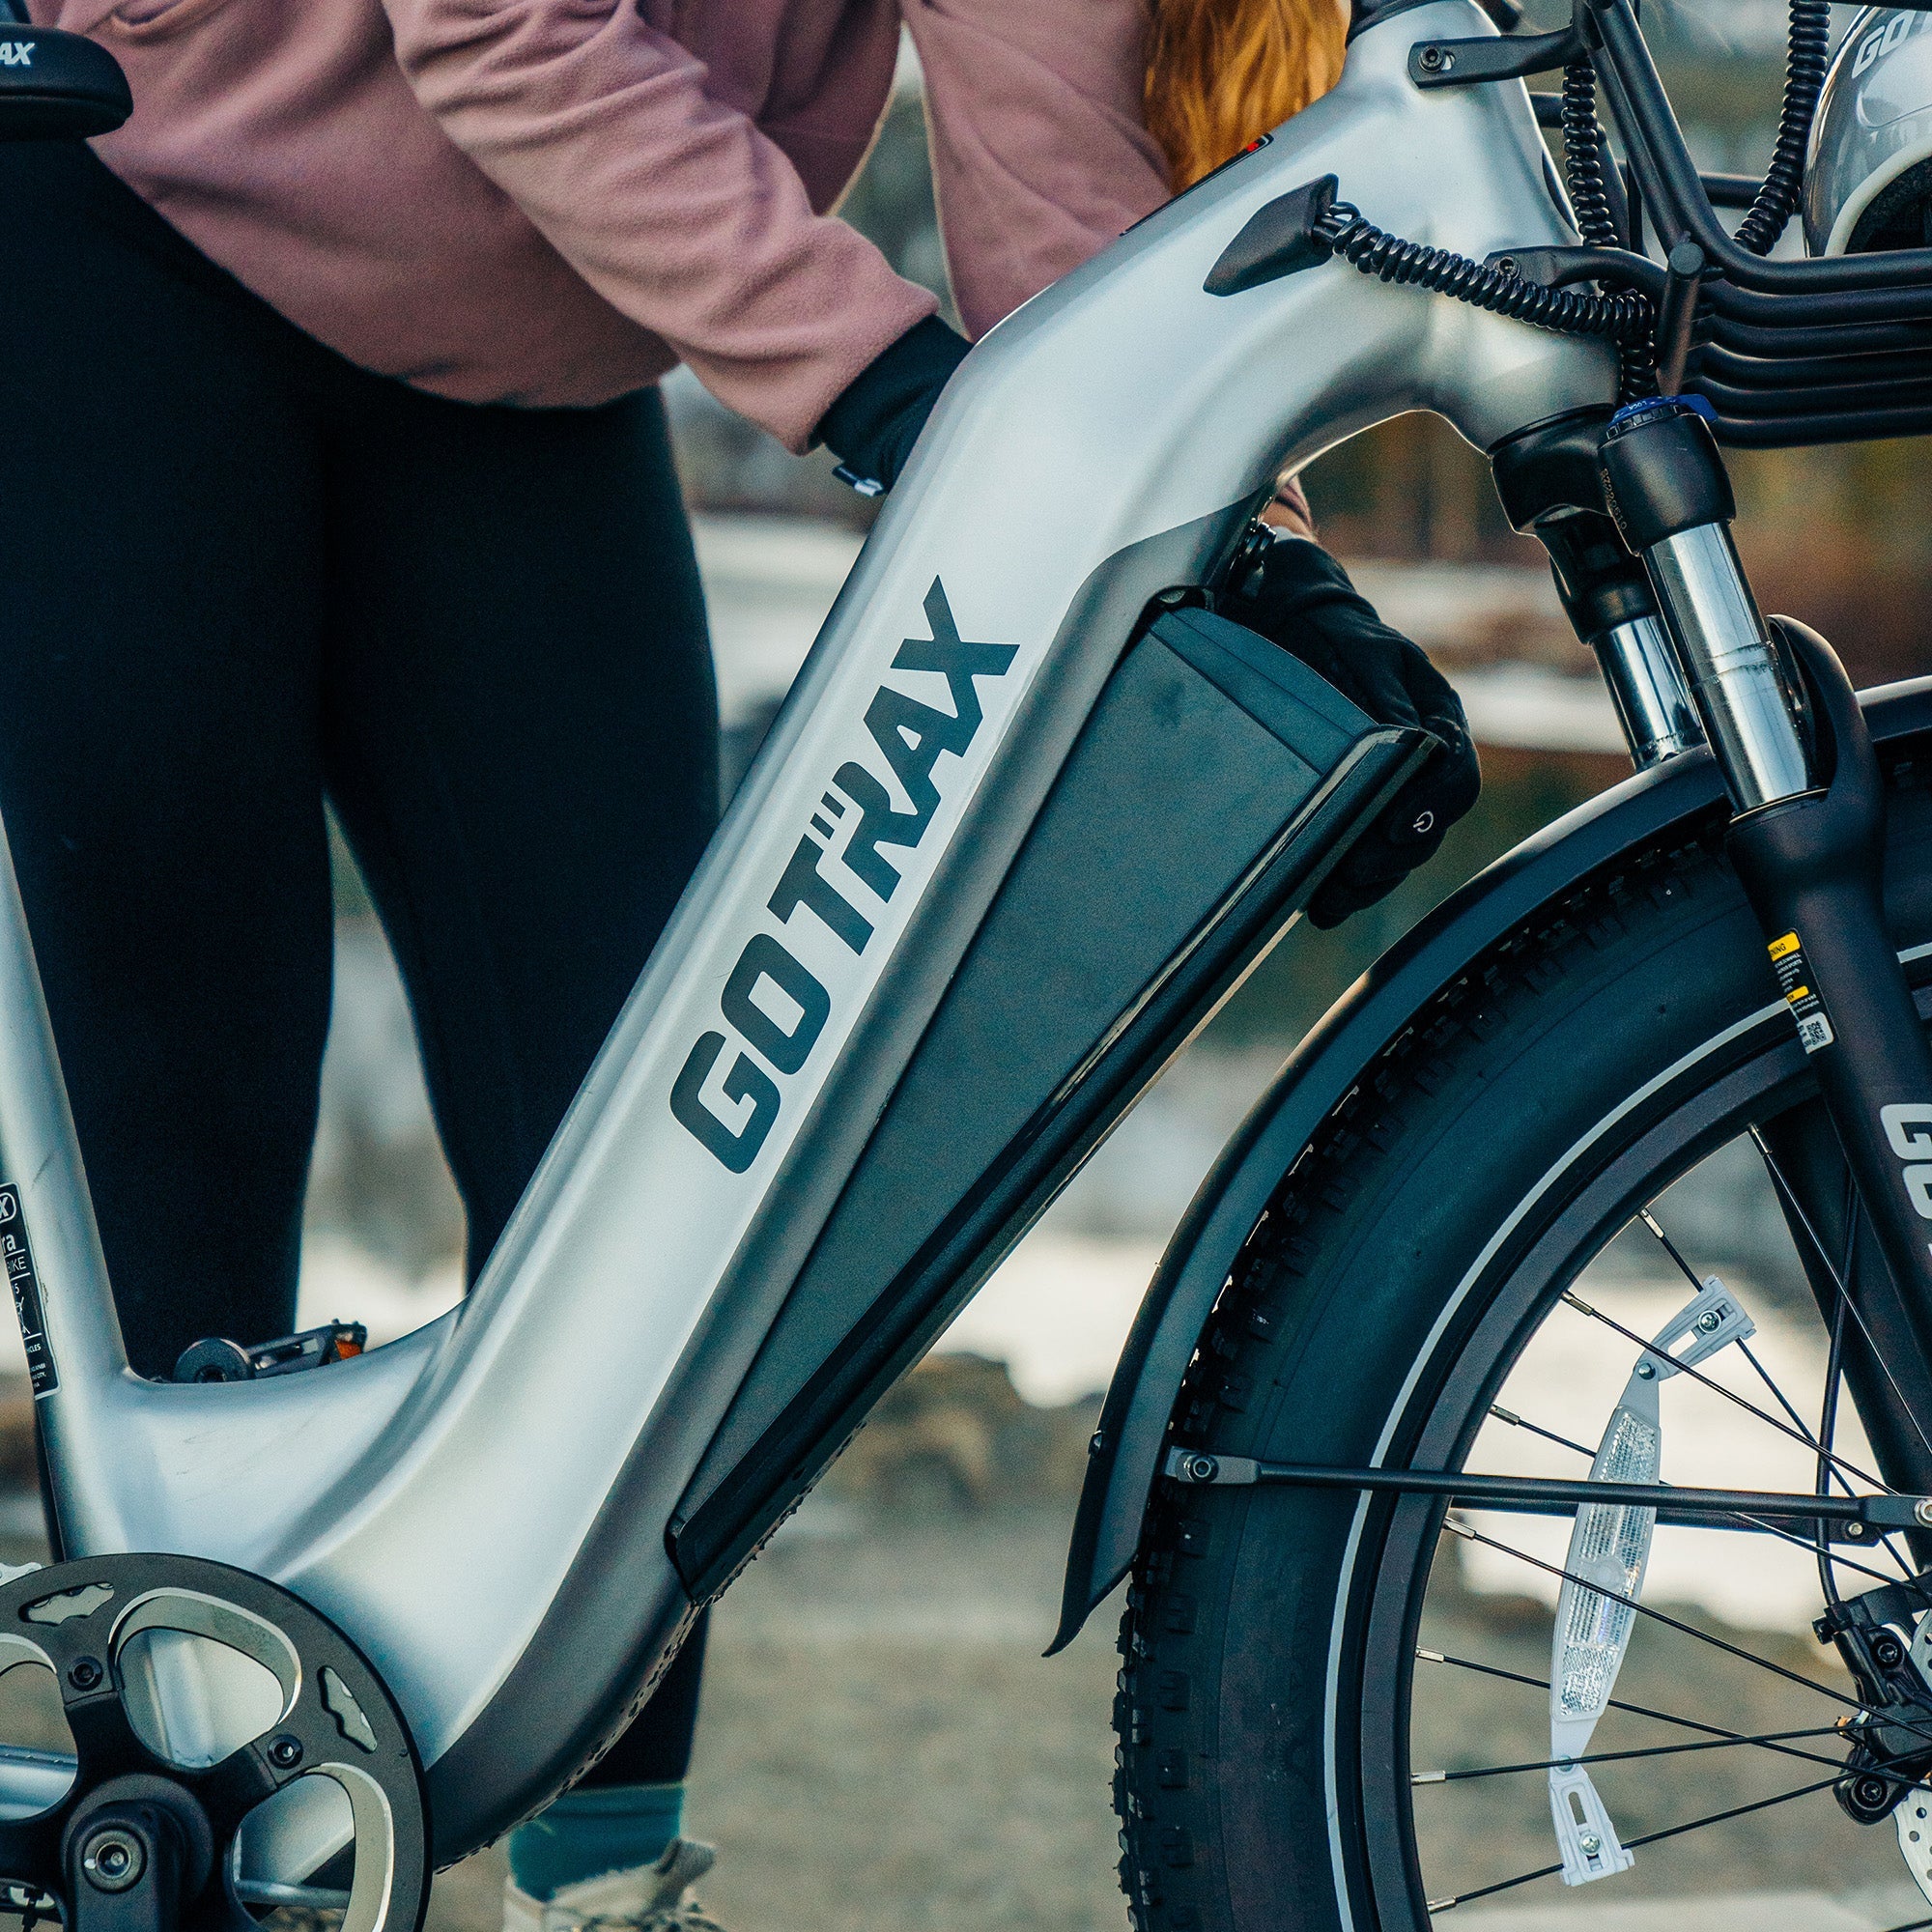 Tundra Electric Bike - GOTRAX